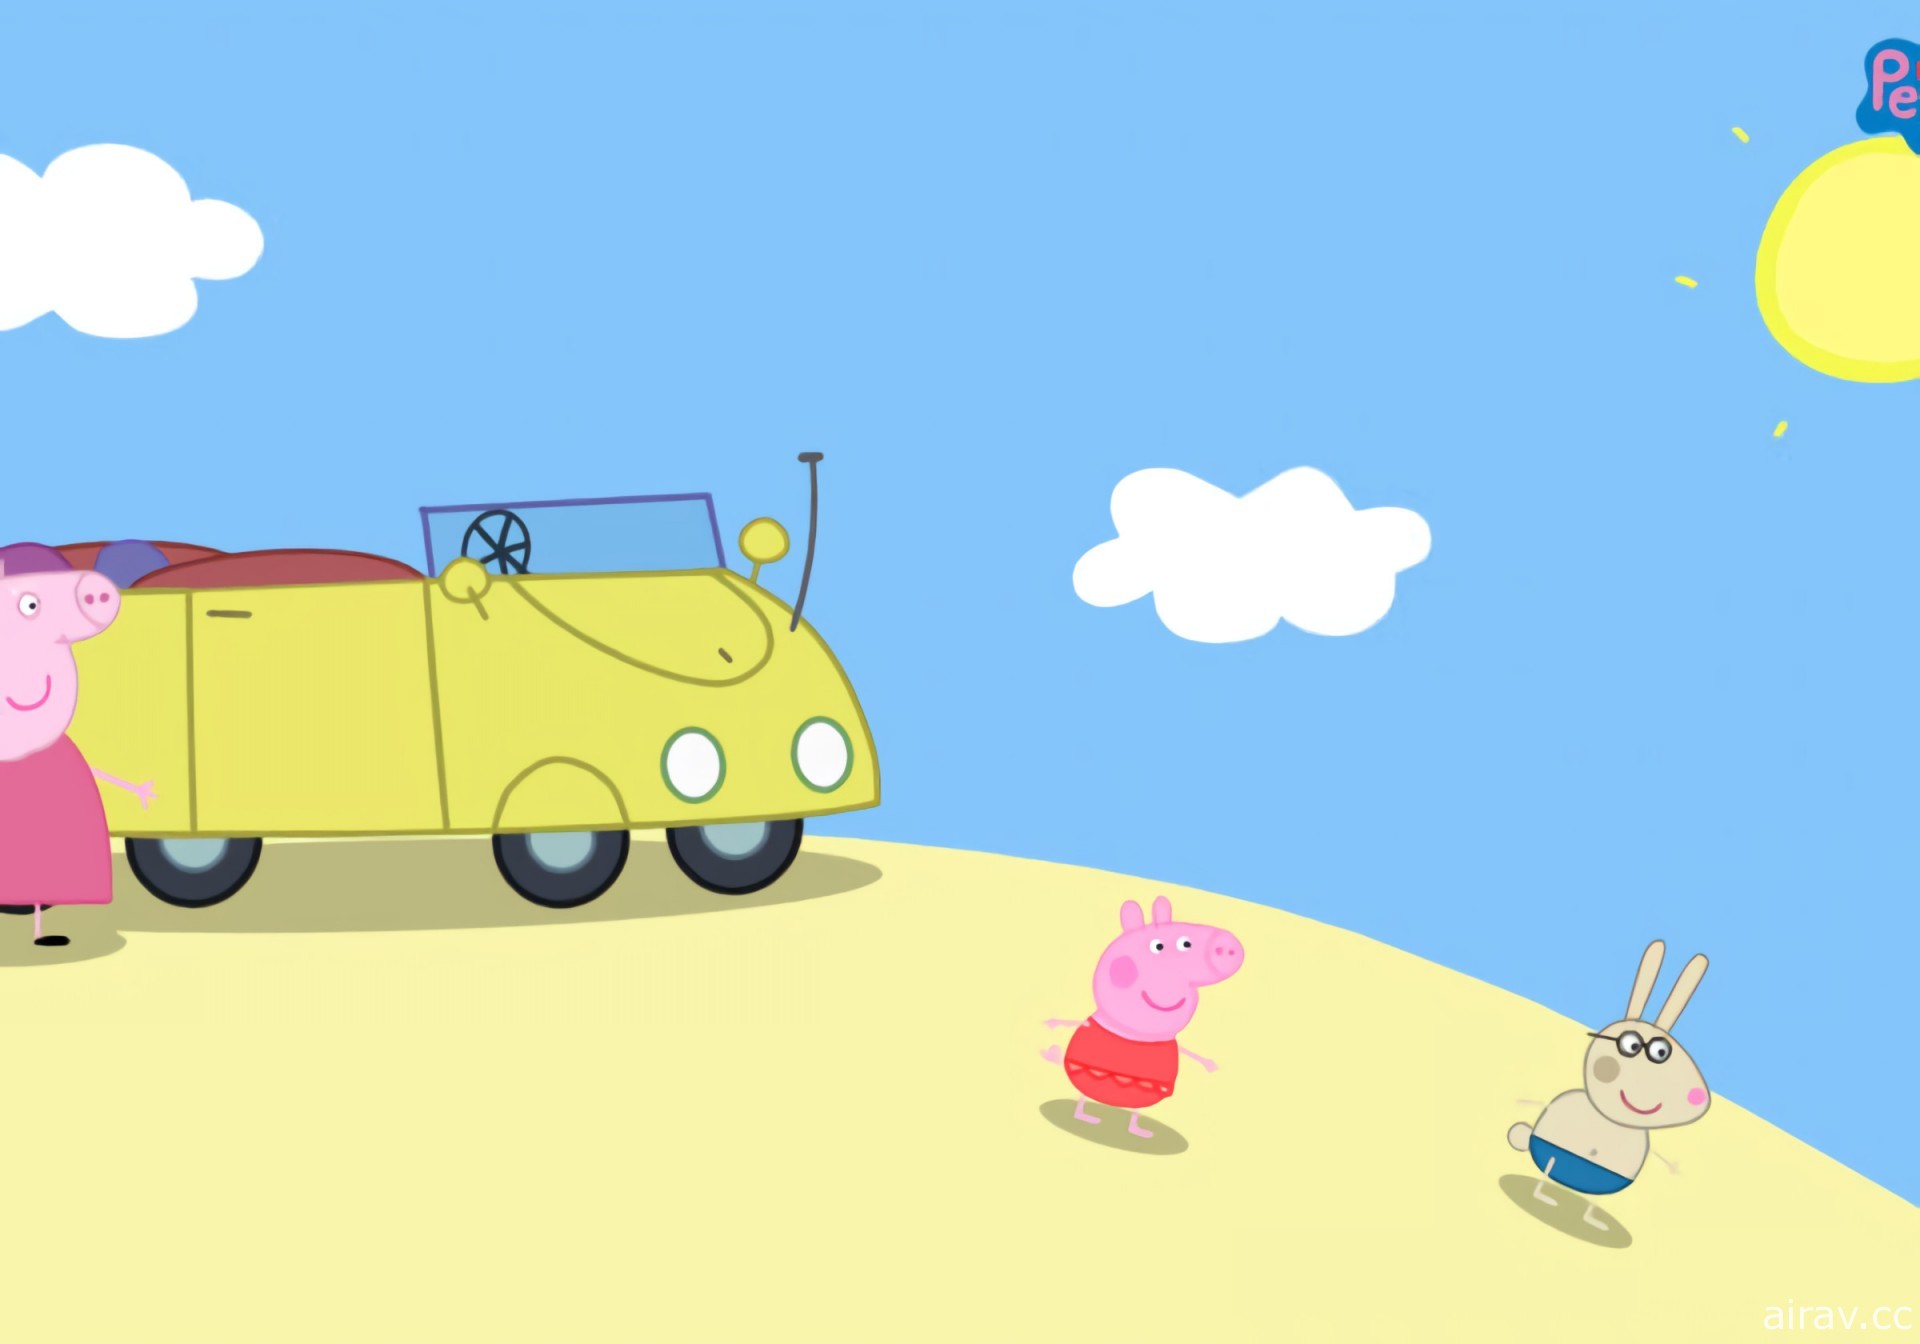 《我的朋友佩佩猪》释出实机游玩宣传影片 与佩佩猪一起展开童趣大冒险